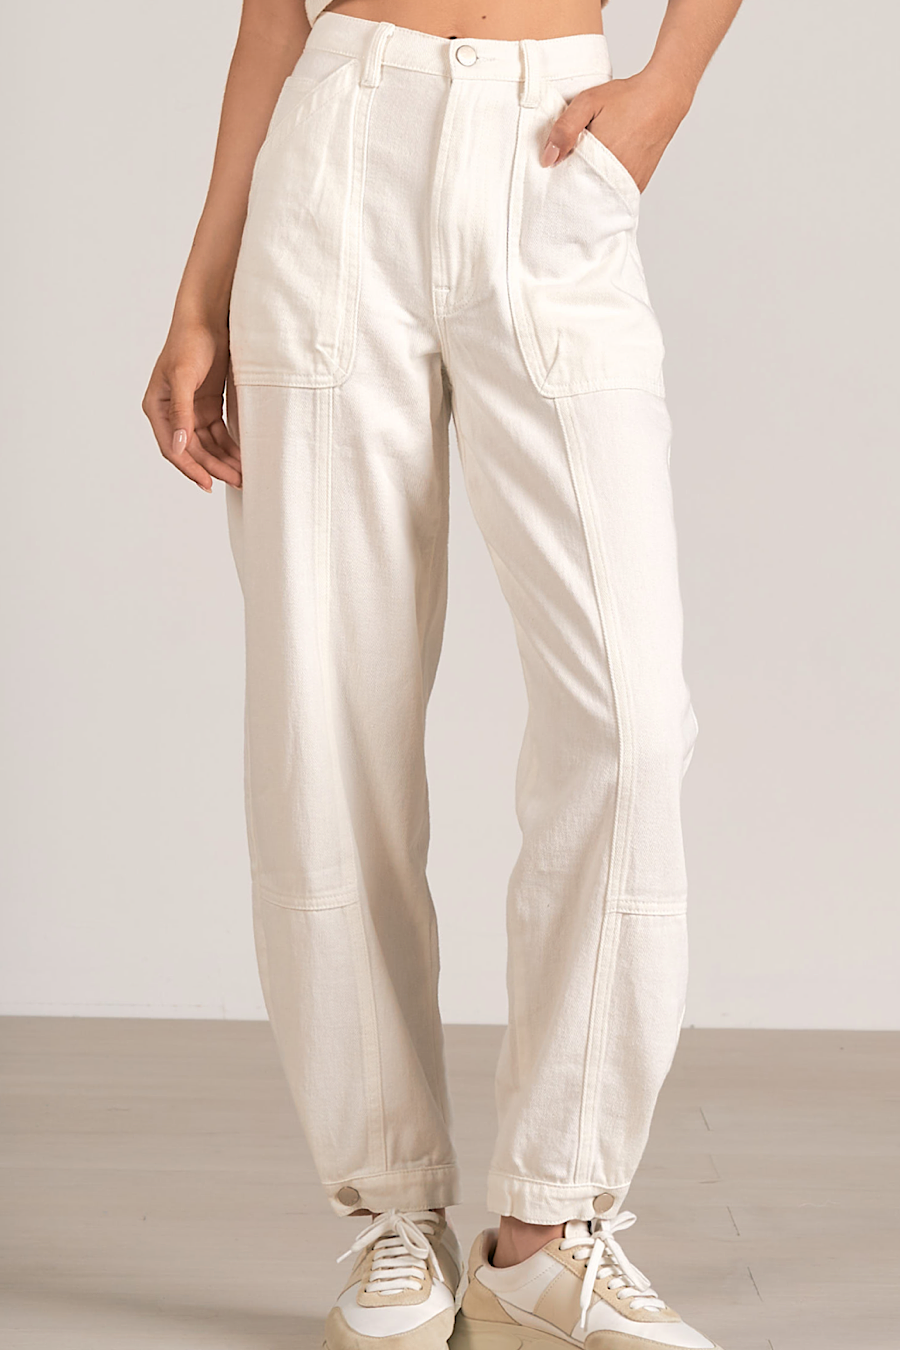 Luella White Cargo Pants